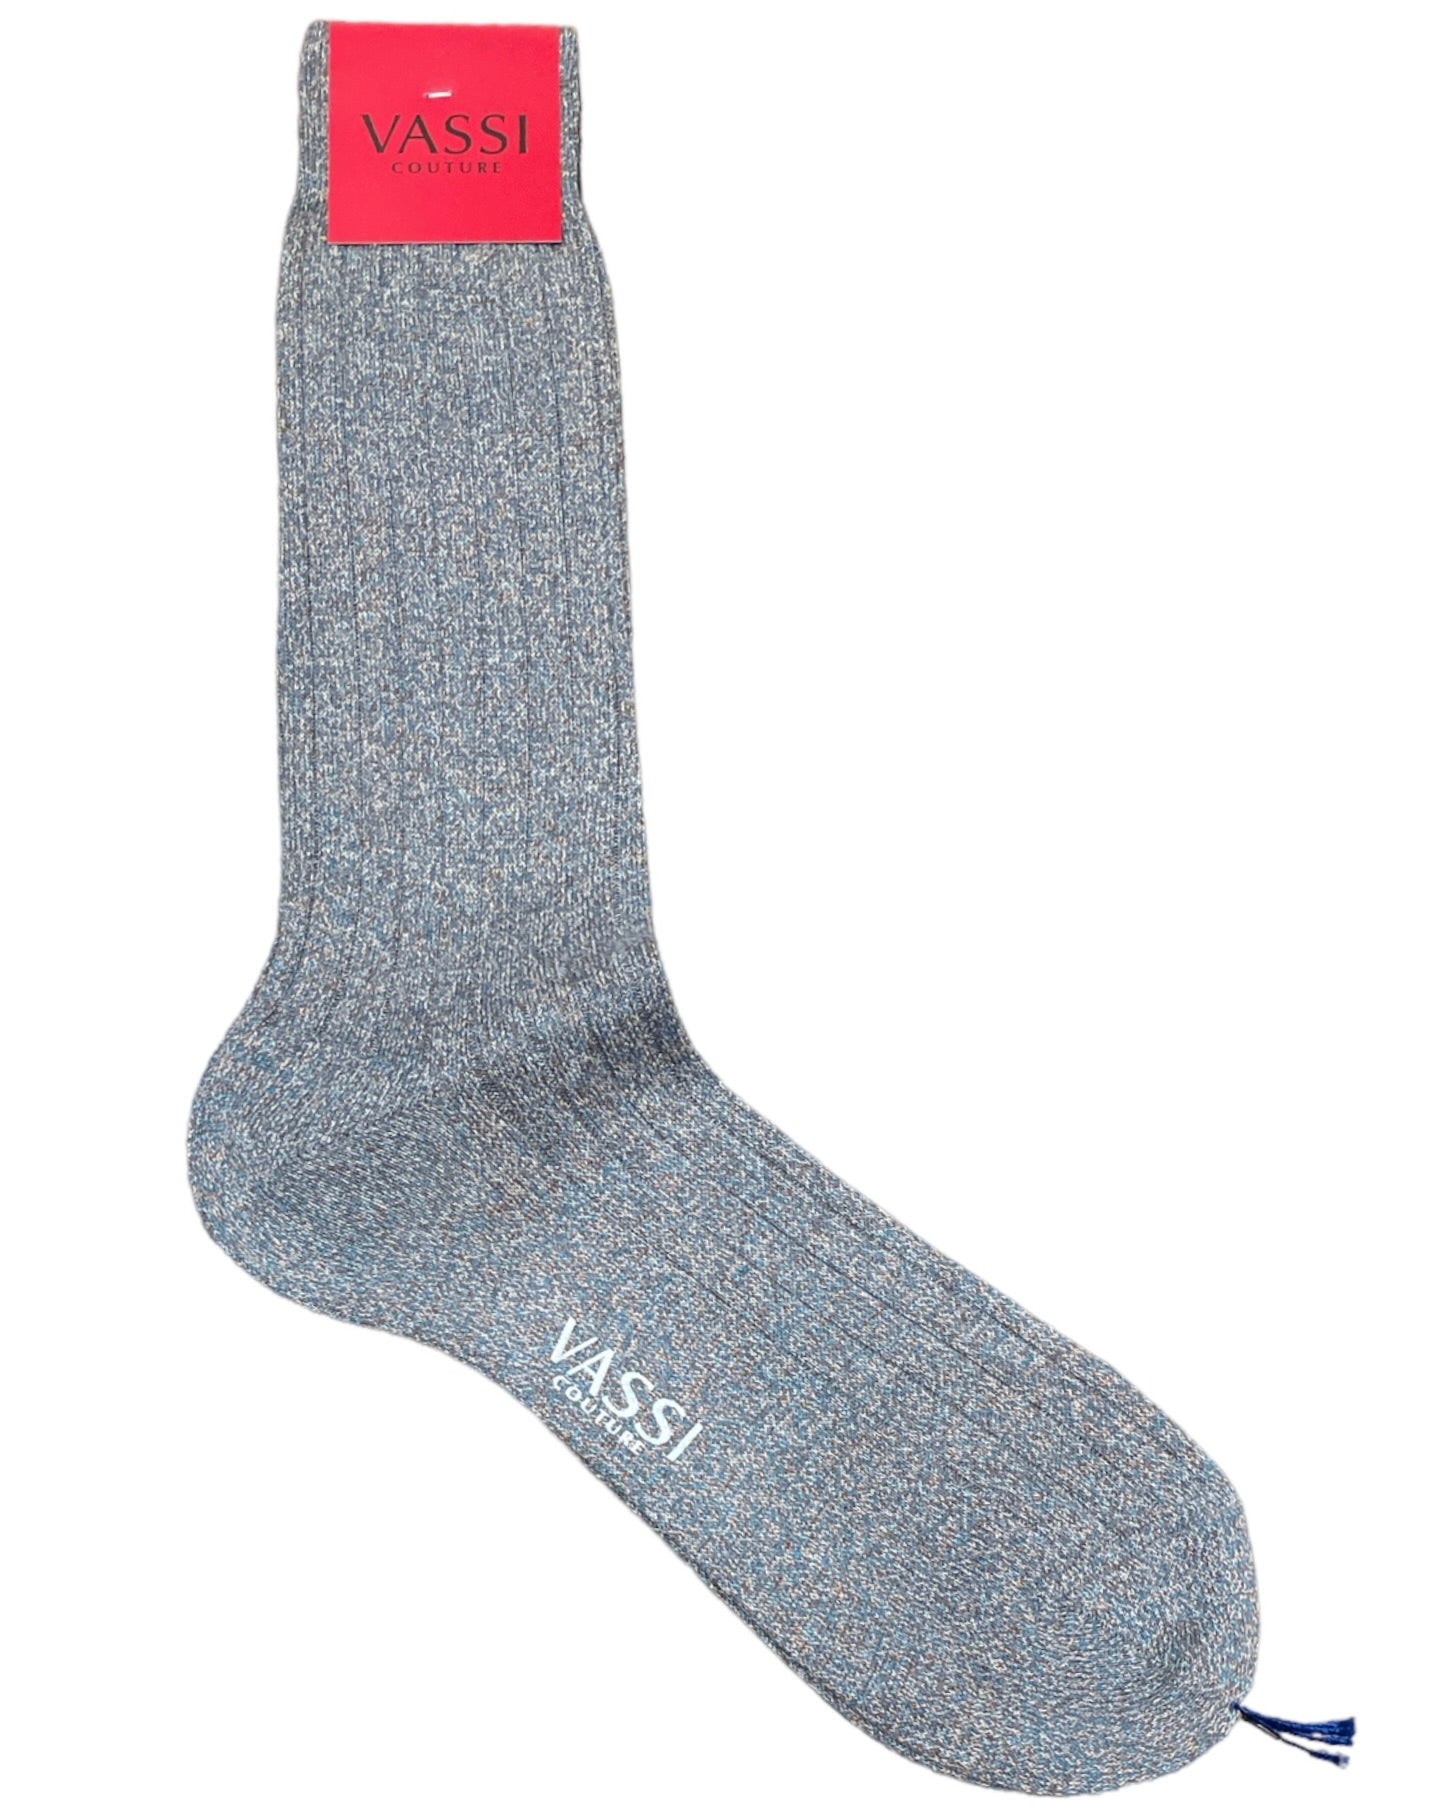 Melange Cotton Socks - VASSI